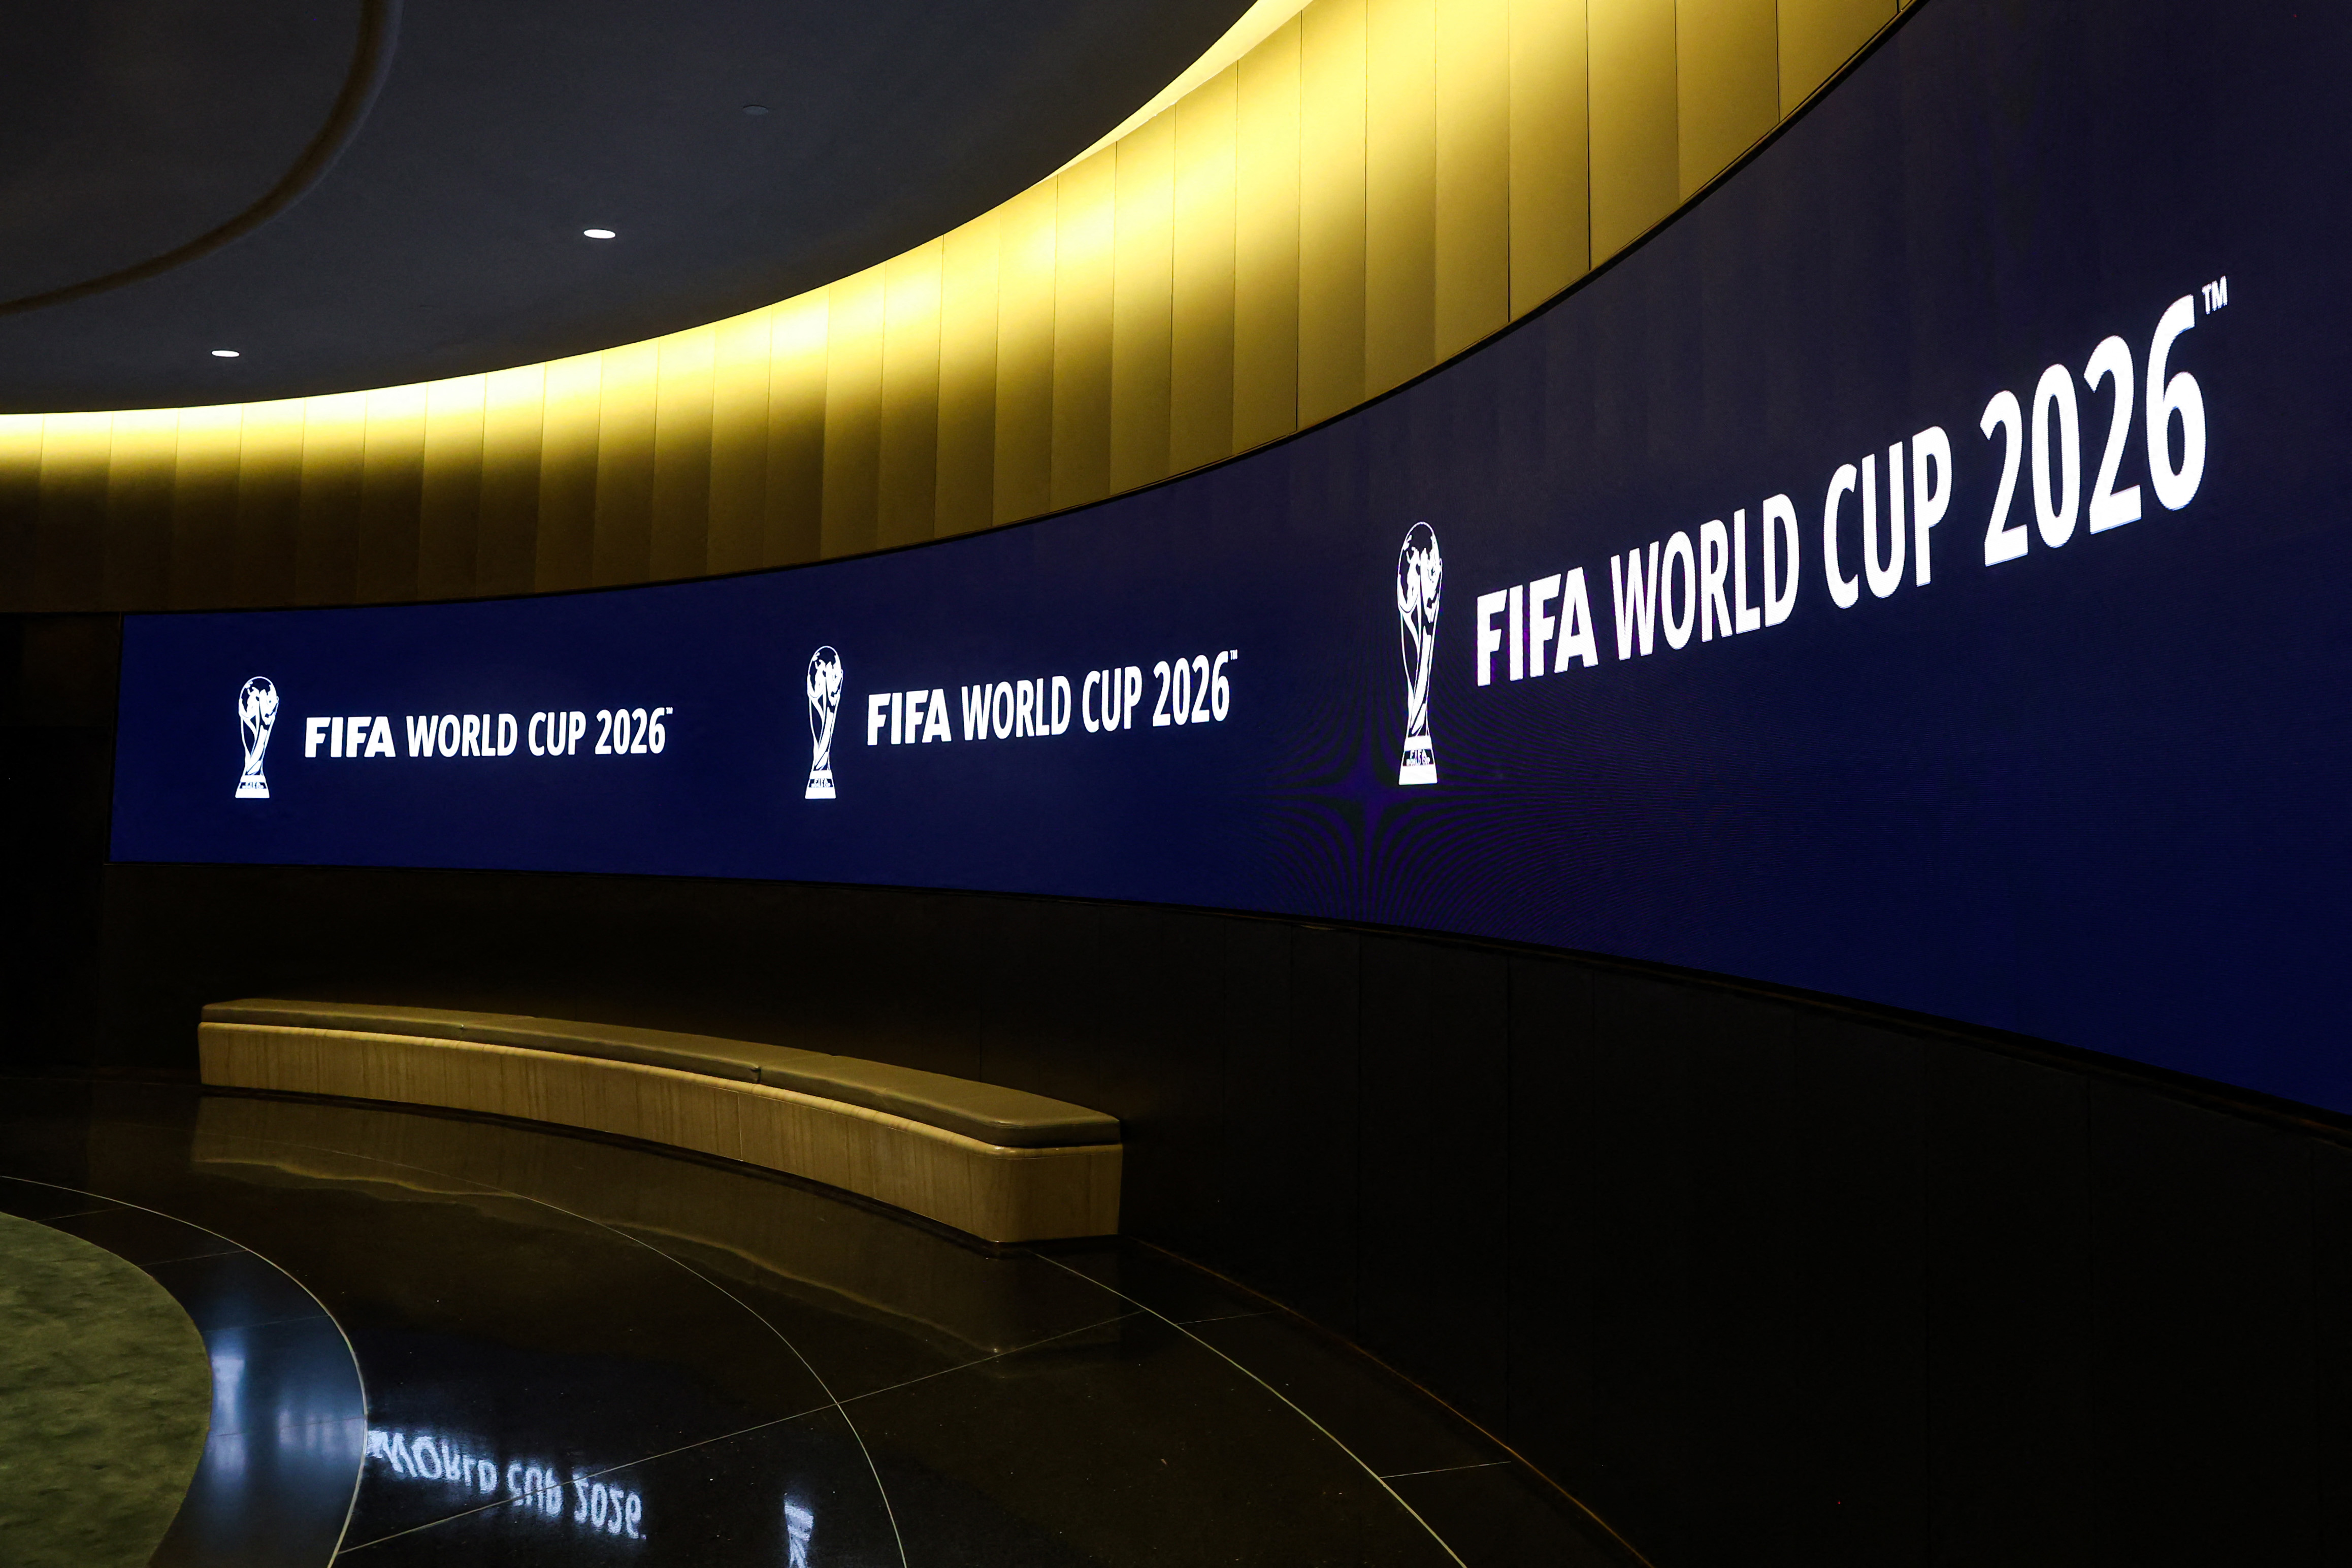 Kansas City named FIFA World Cup 2026 host city